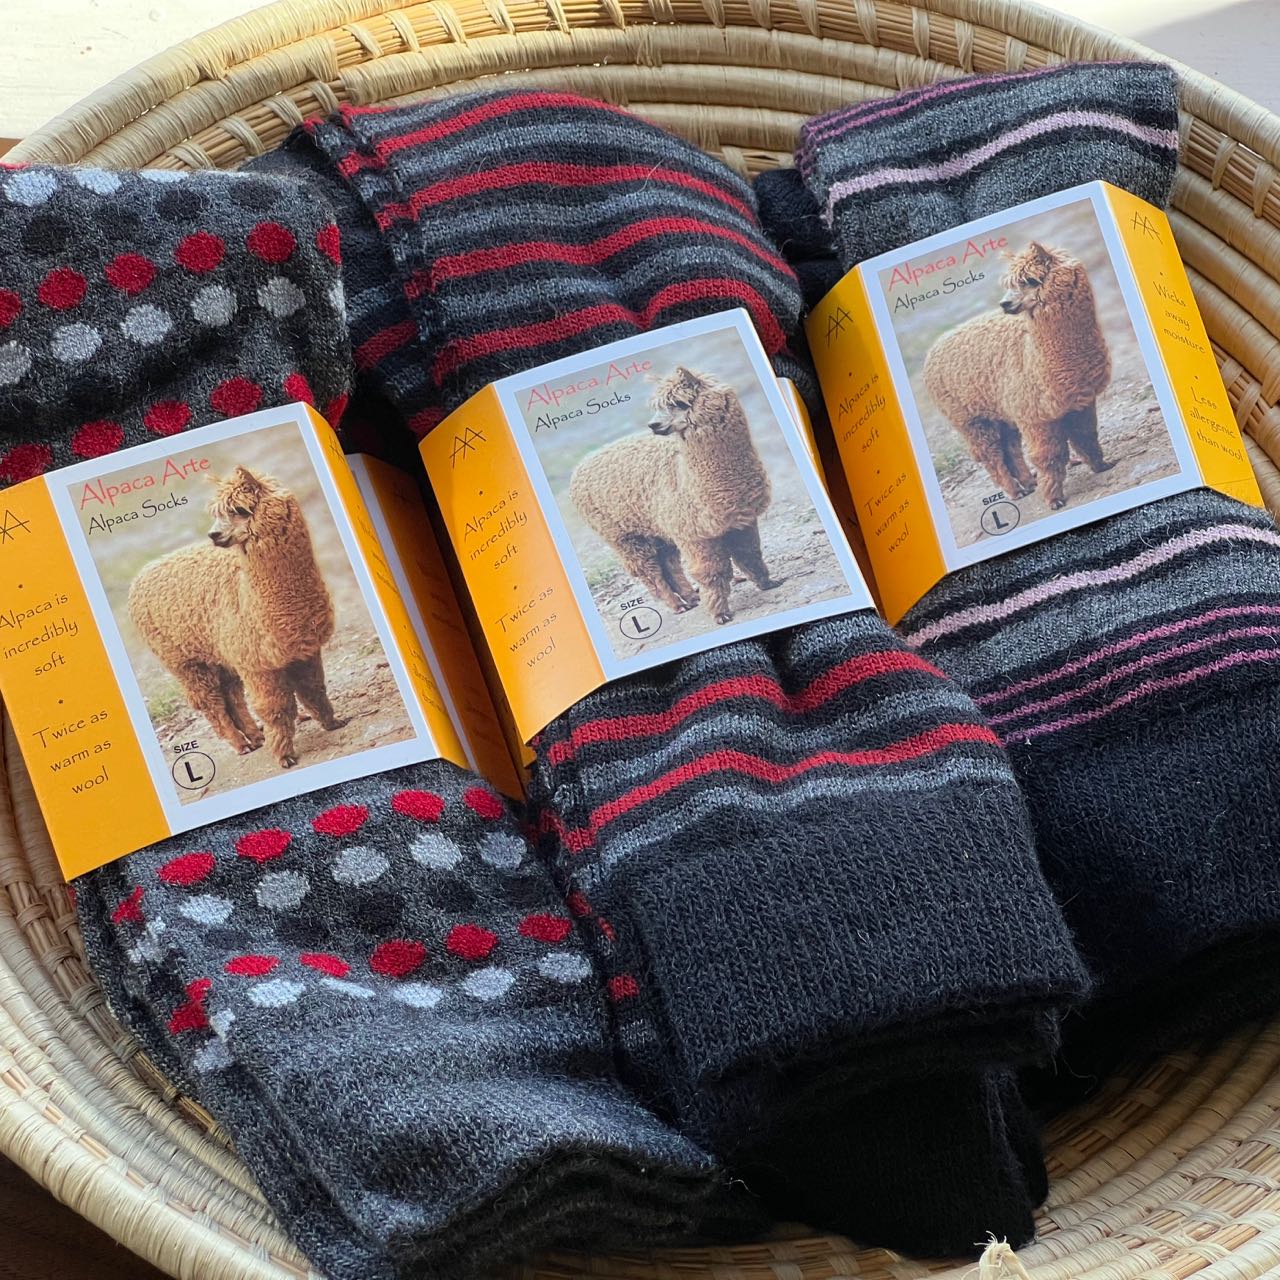 Alpaca Wool Socks, Large